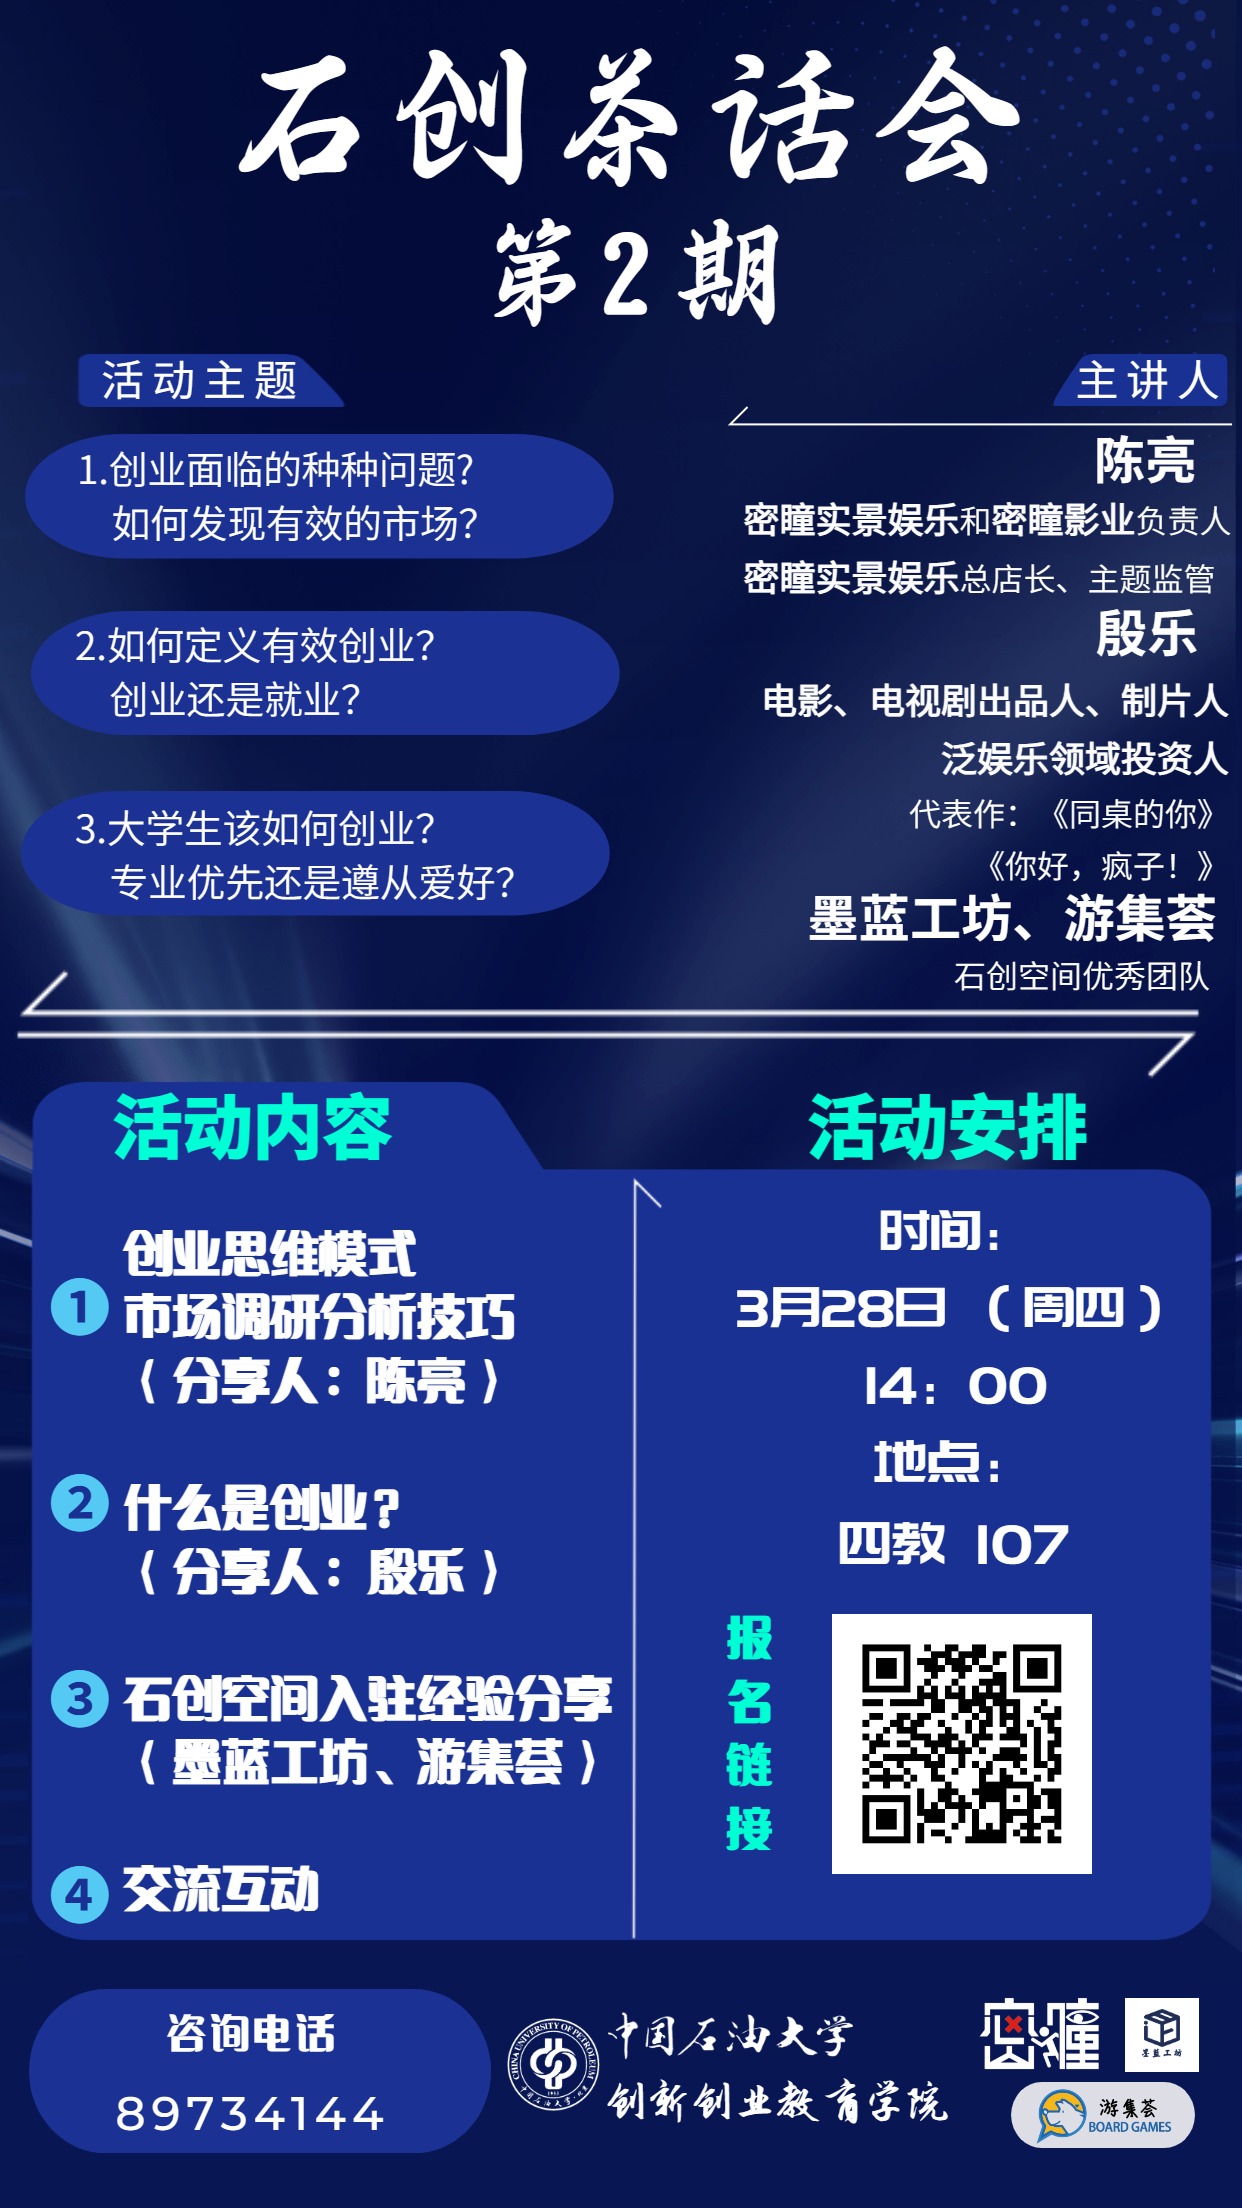 蓝色互联网营销课程介绍海报 (5).jpg